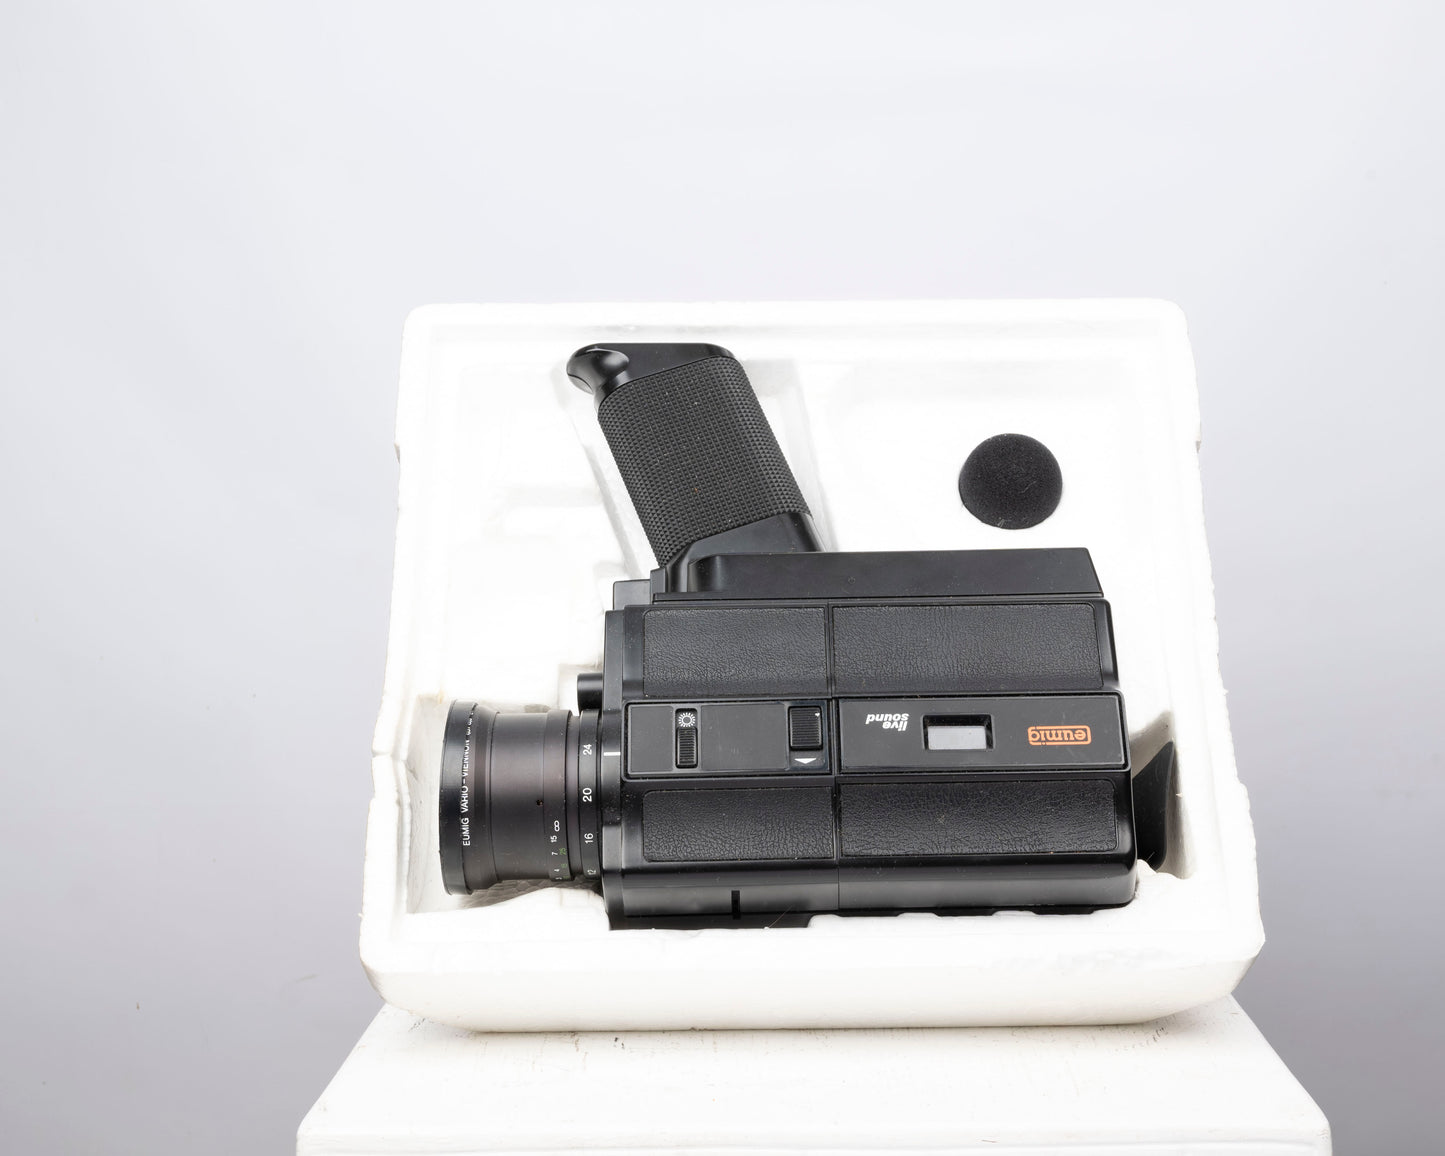 Caméra Eumig Sound 30XL Super 8 avec boîte d'origine + accessoires